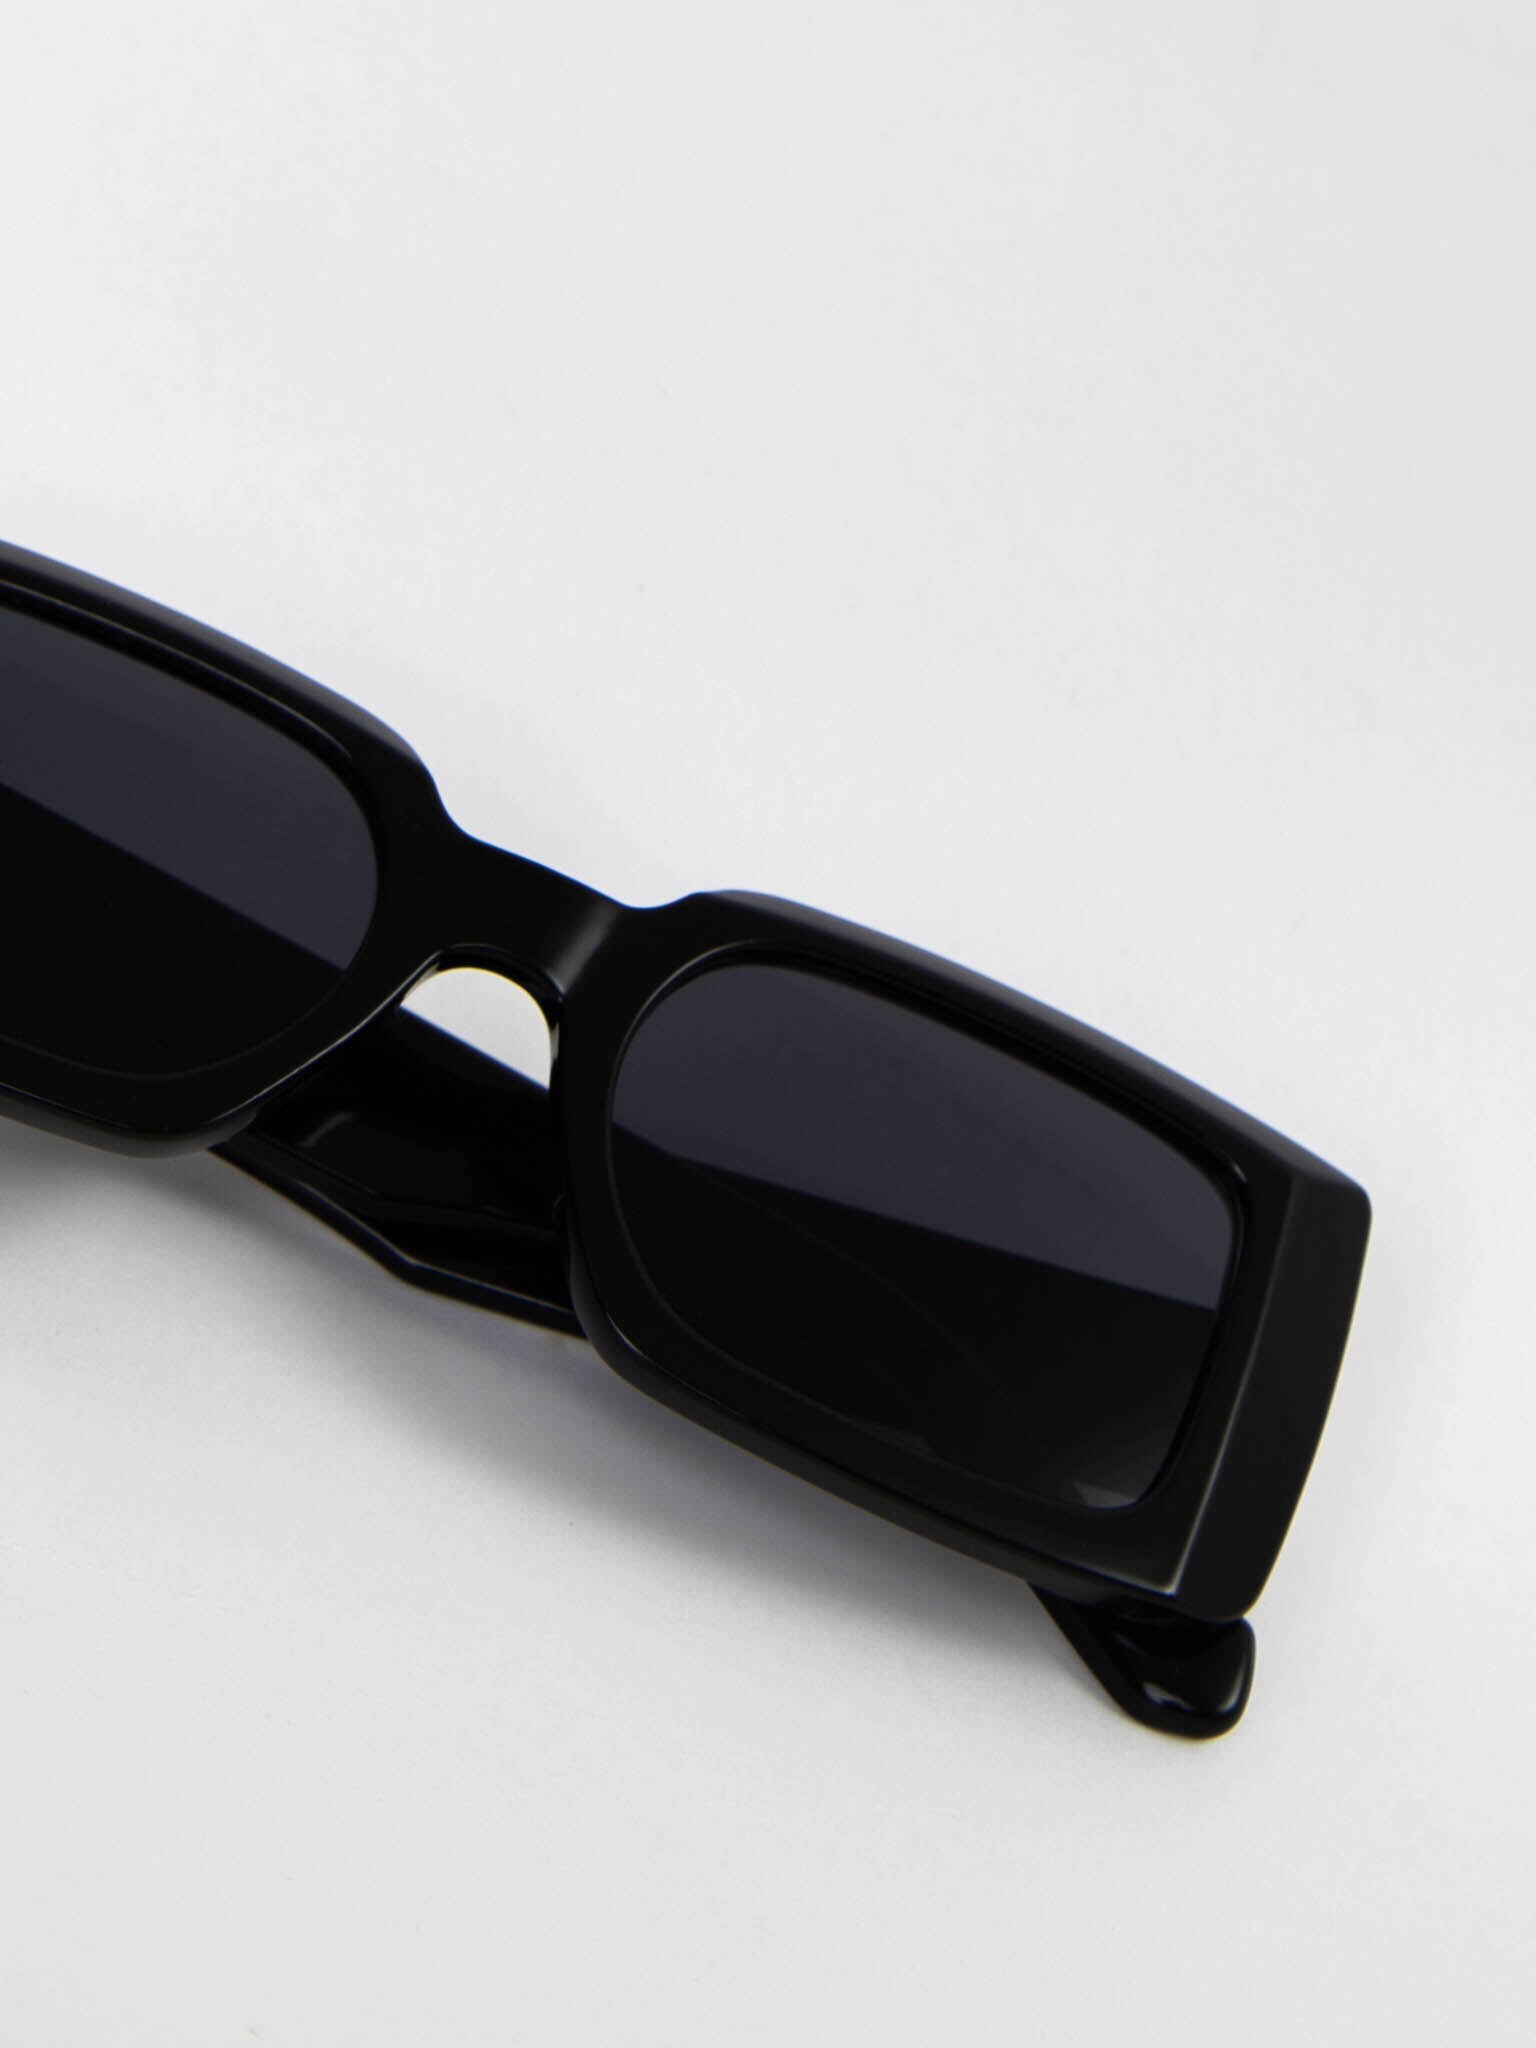 Sonnenbrille mit schmalem rechteckigem Rahmen